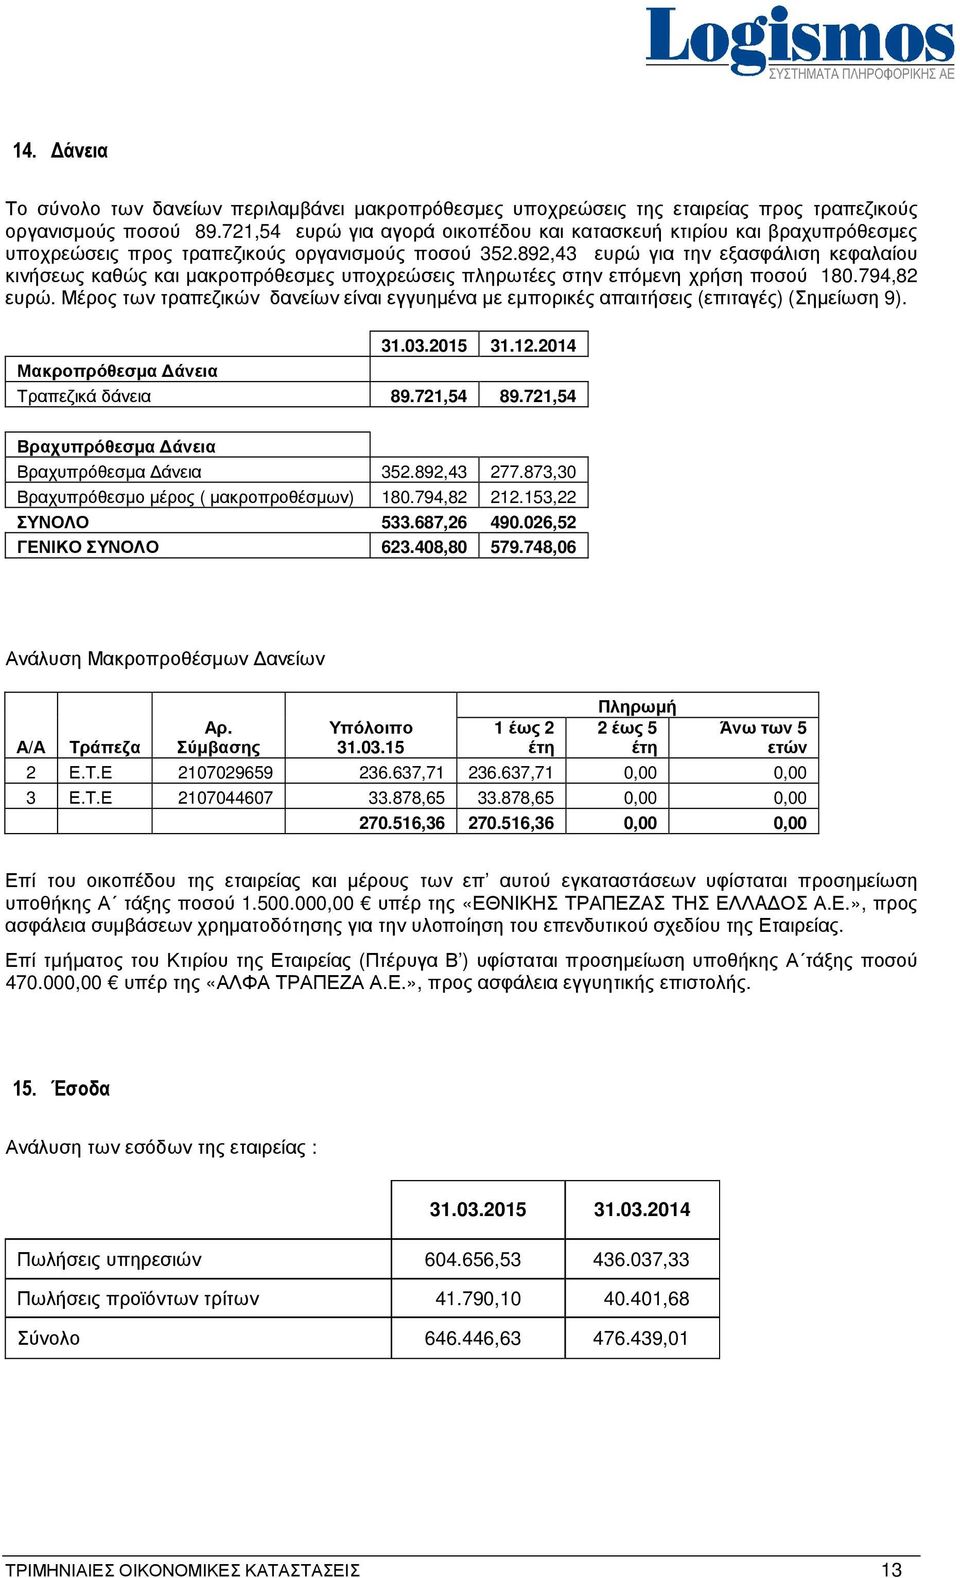 892,43 ευρώ για την εξασφάλιση κεφαλαίου κινήσεως καθώς και μακροπρόθεσμες υποχρεώσεις πληρωτέες στην επόμενη χρήση ποσού 180.794,82 ευρώ.